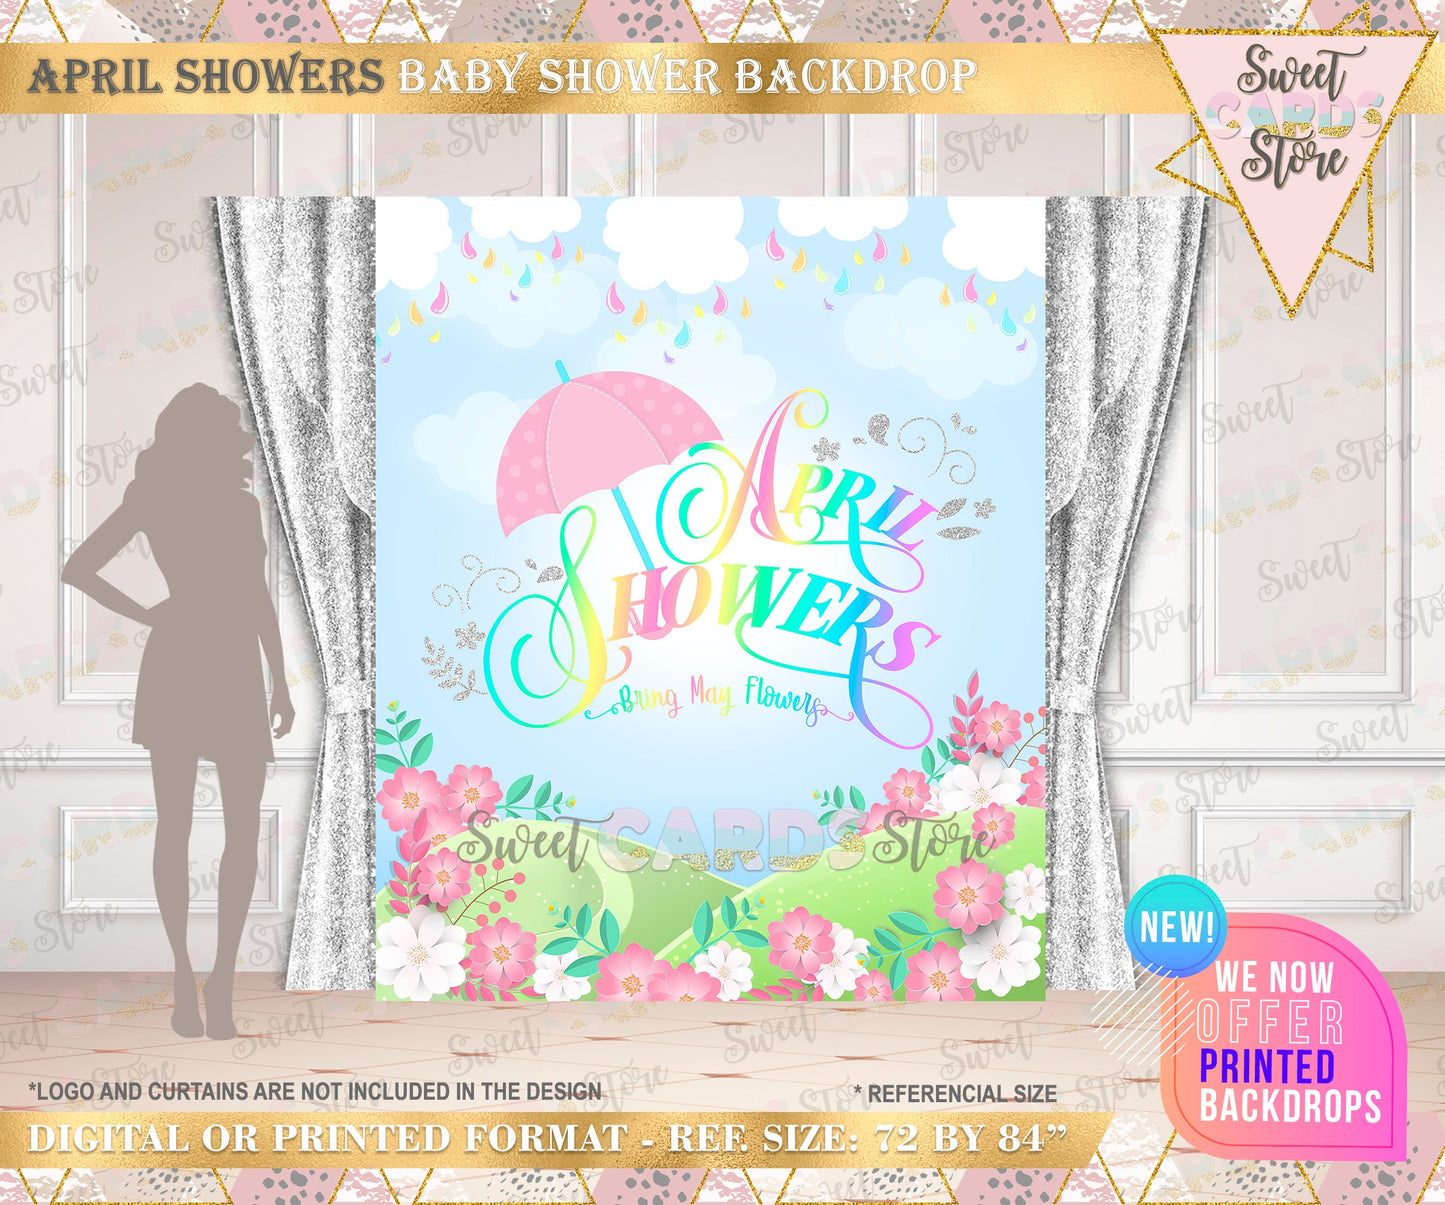 april showers floral party backdrop, april showers baby shower backdrop, spring floral banner, april spring flowers shower backdrop decor